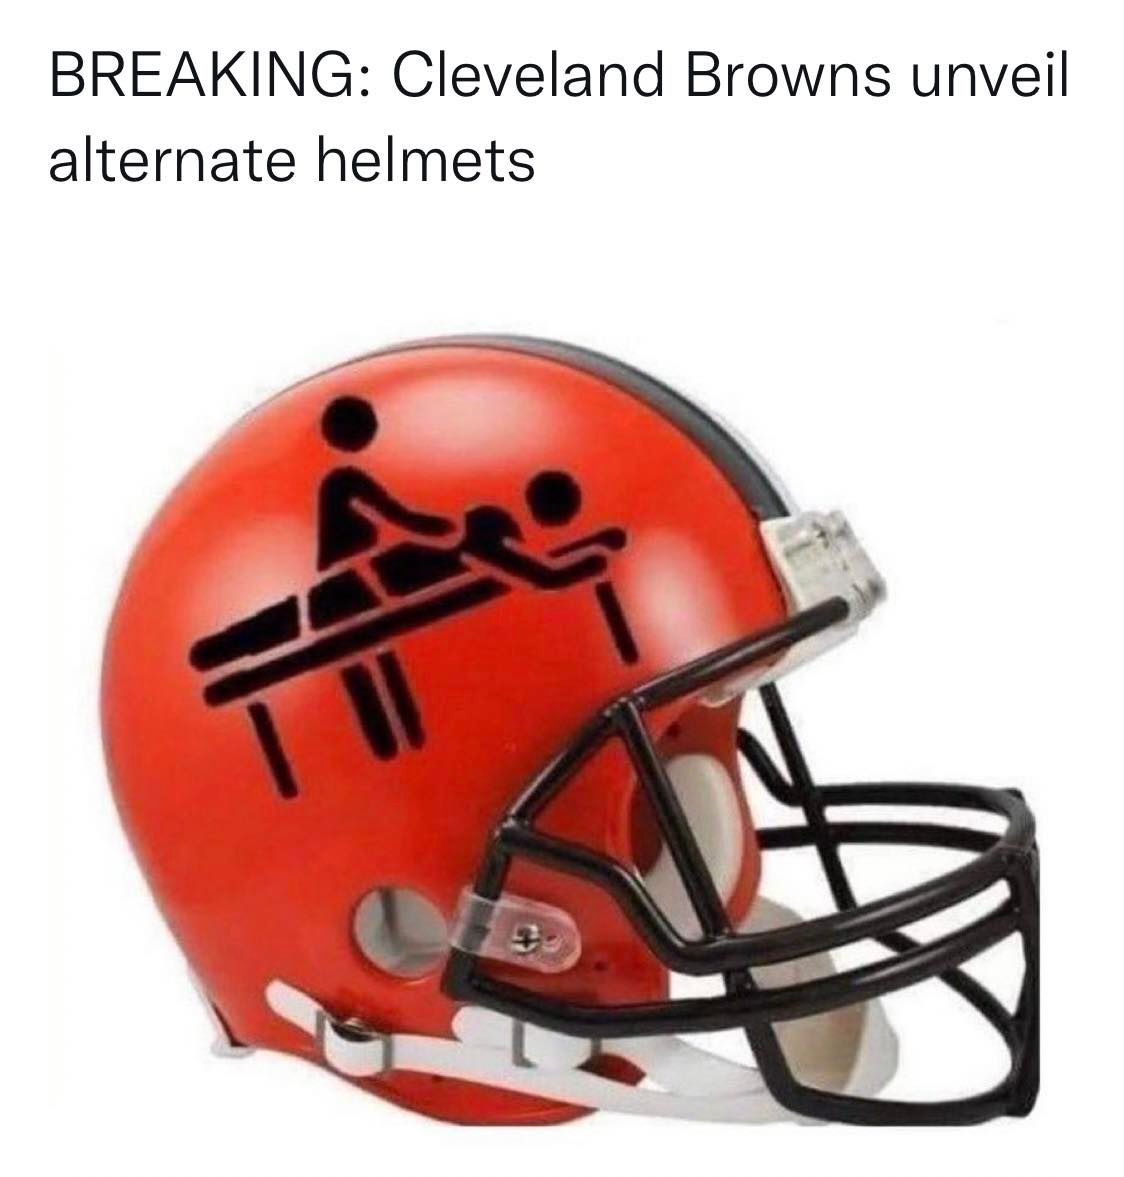 NFL football memes - browns helmet meme - Breaking Cleveland Browns unveil alternate helmets